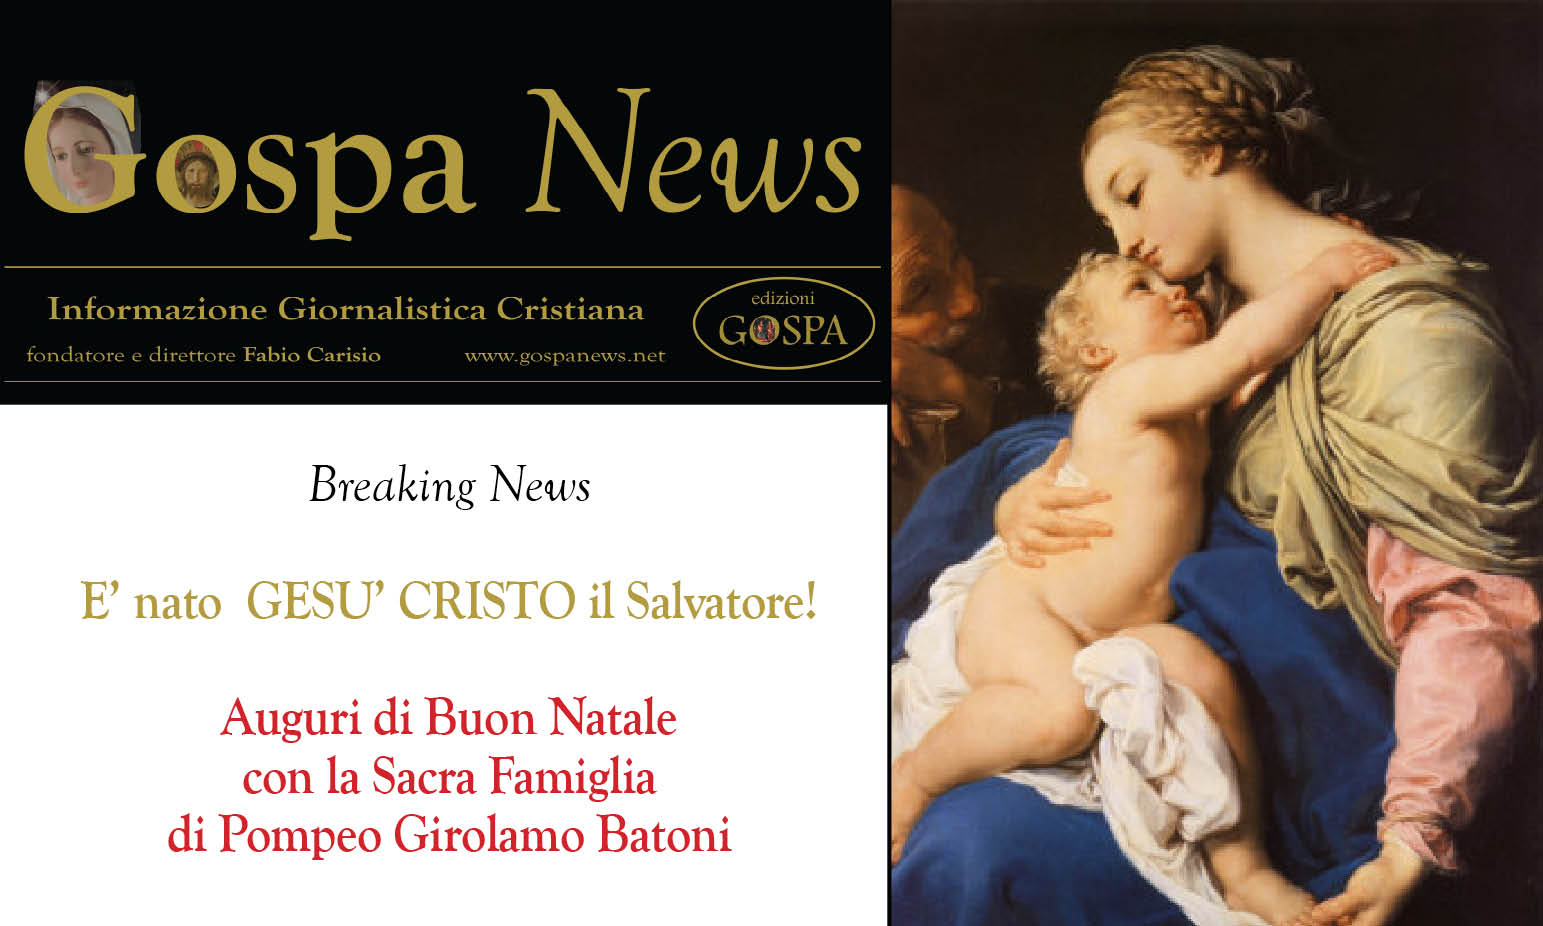 Breaking News: E’ nato GESU’ CRISTO Il Salvatore!